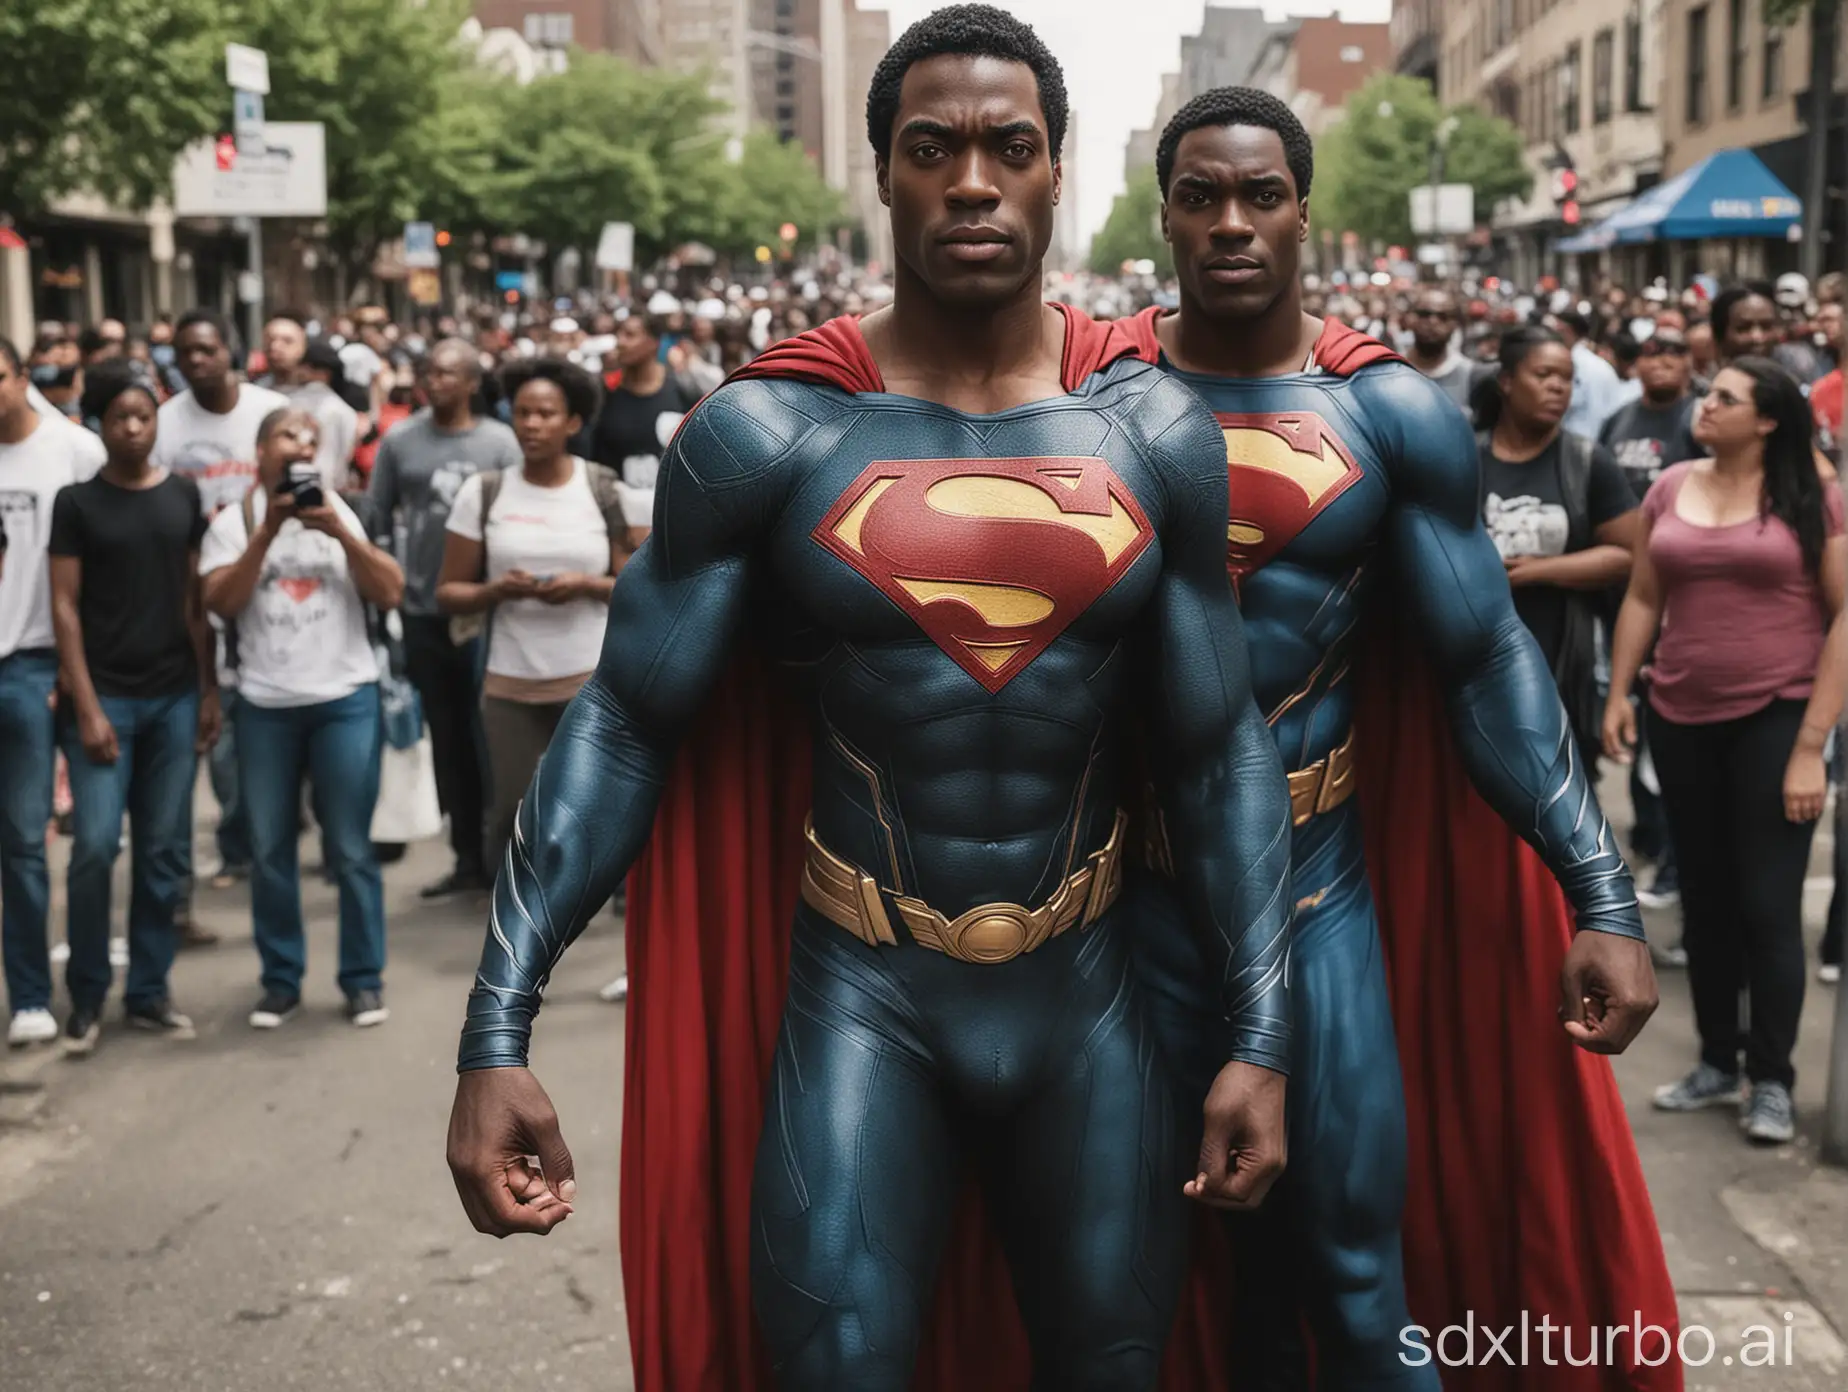 Black superman helping people